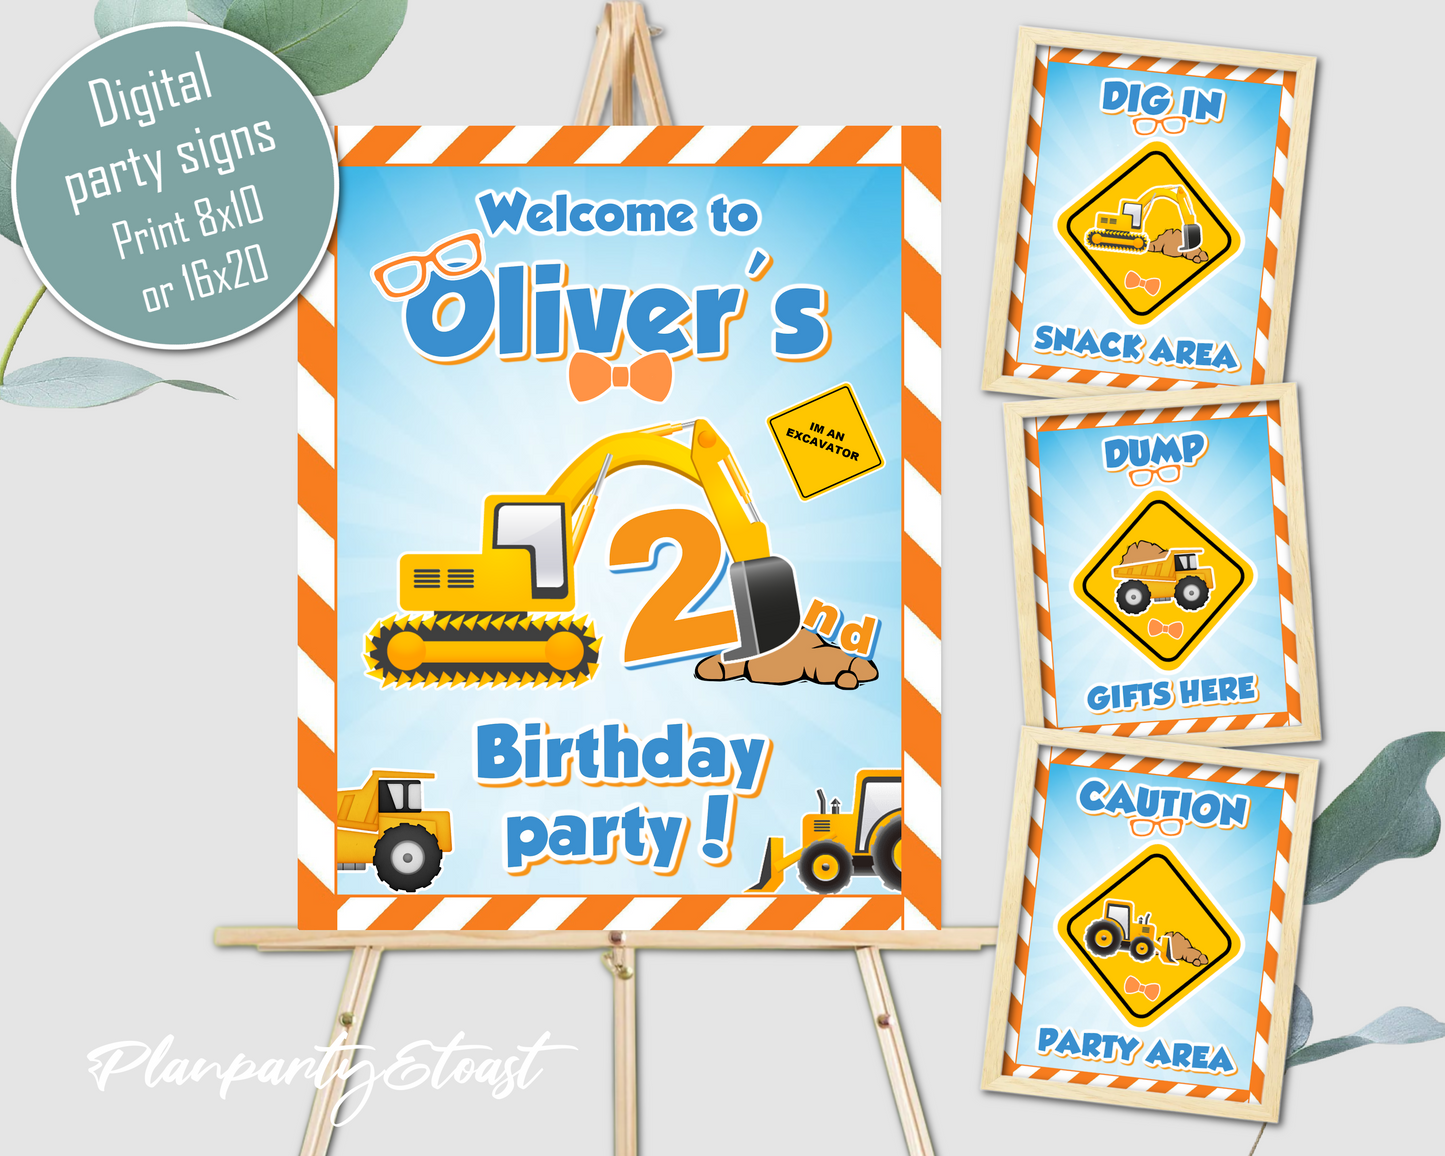 Blippi birthday party signs